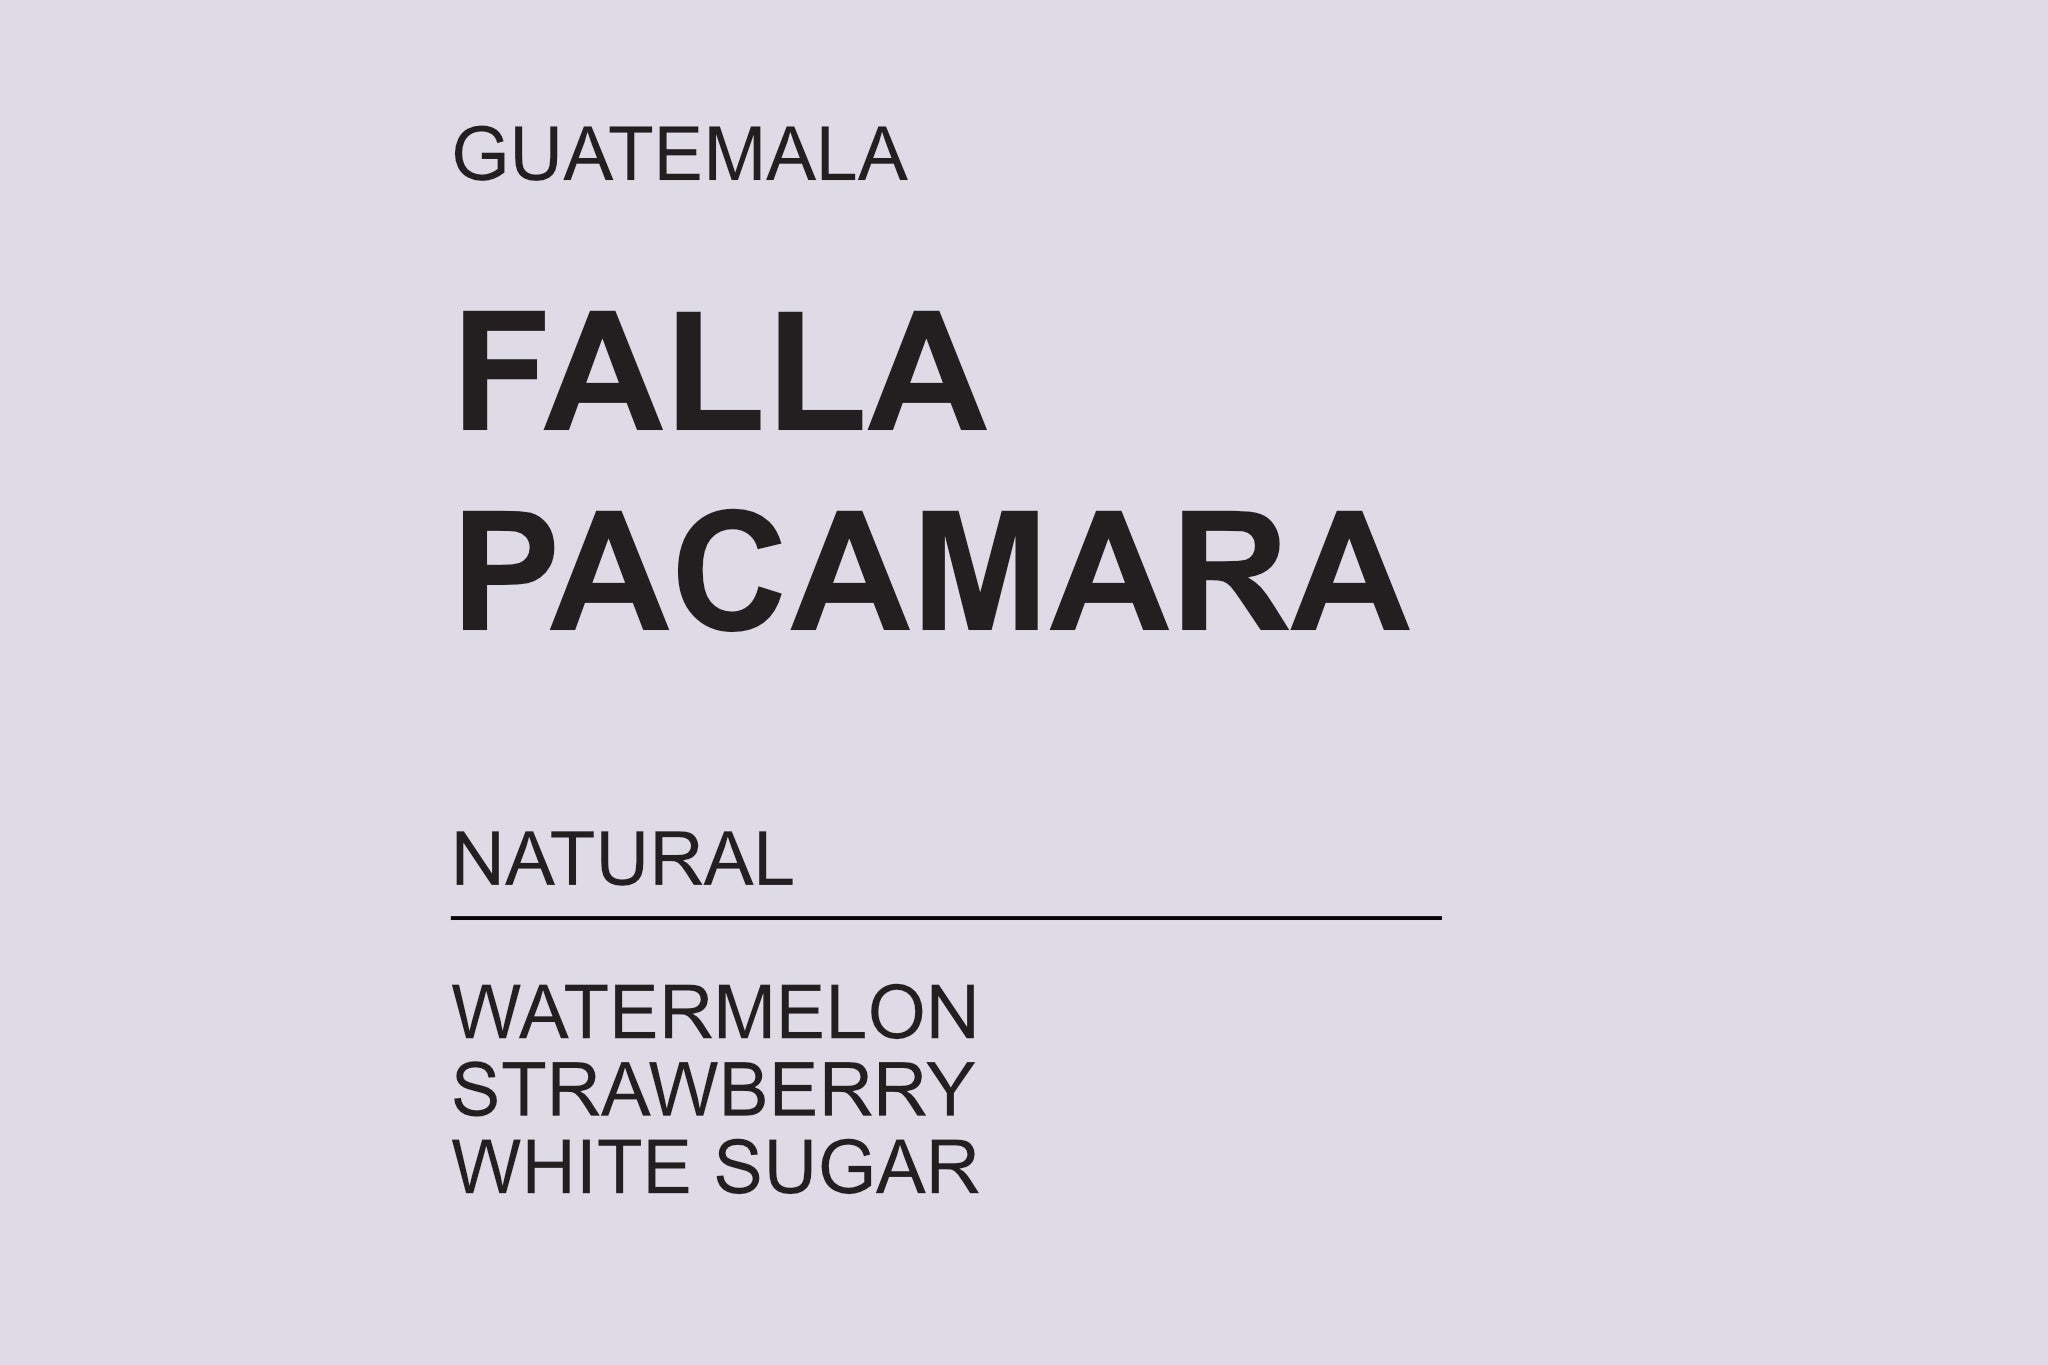 Falla Pacamara - Guatemala